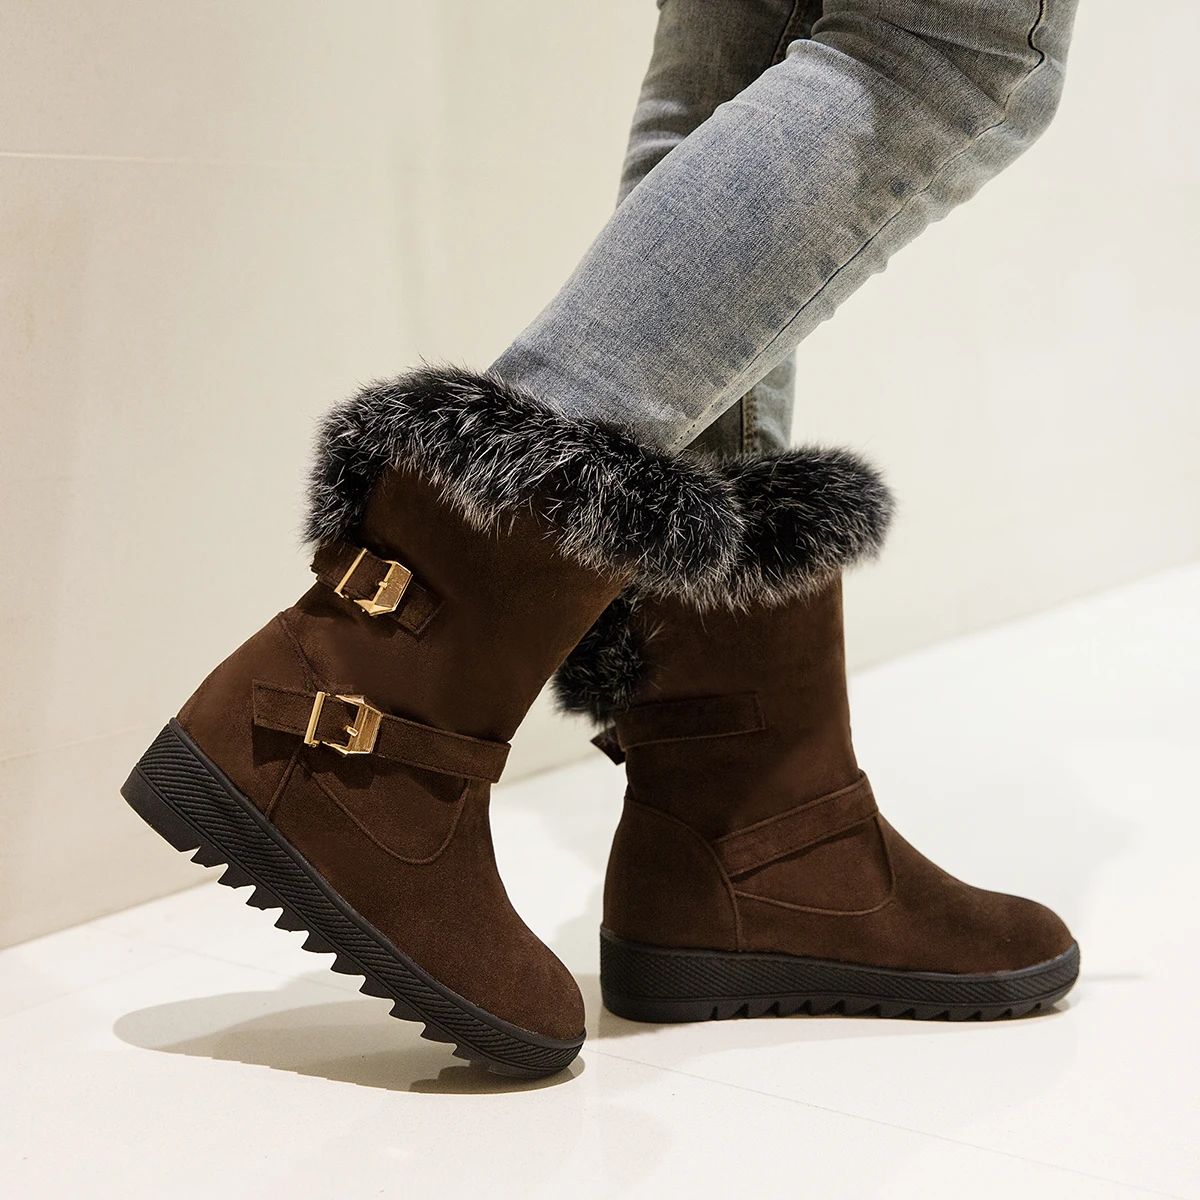 LDHZXC/Новинка года; женские зимние сапоги; сапоги на высоком каблуке; обувь на толстом меху для холодной зимы; высокие сапоги; женская обувь; большие размеры 11, 12